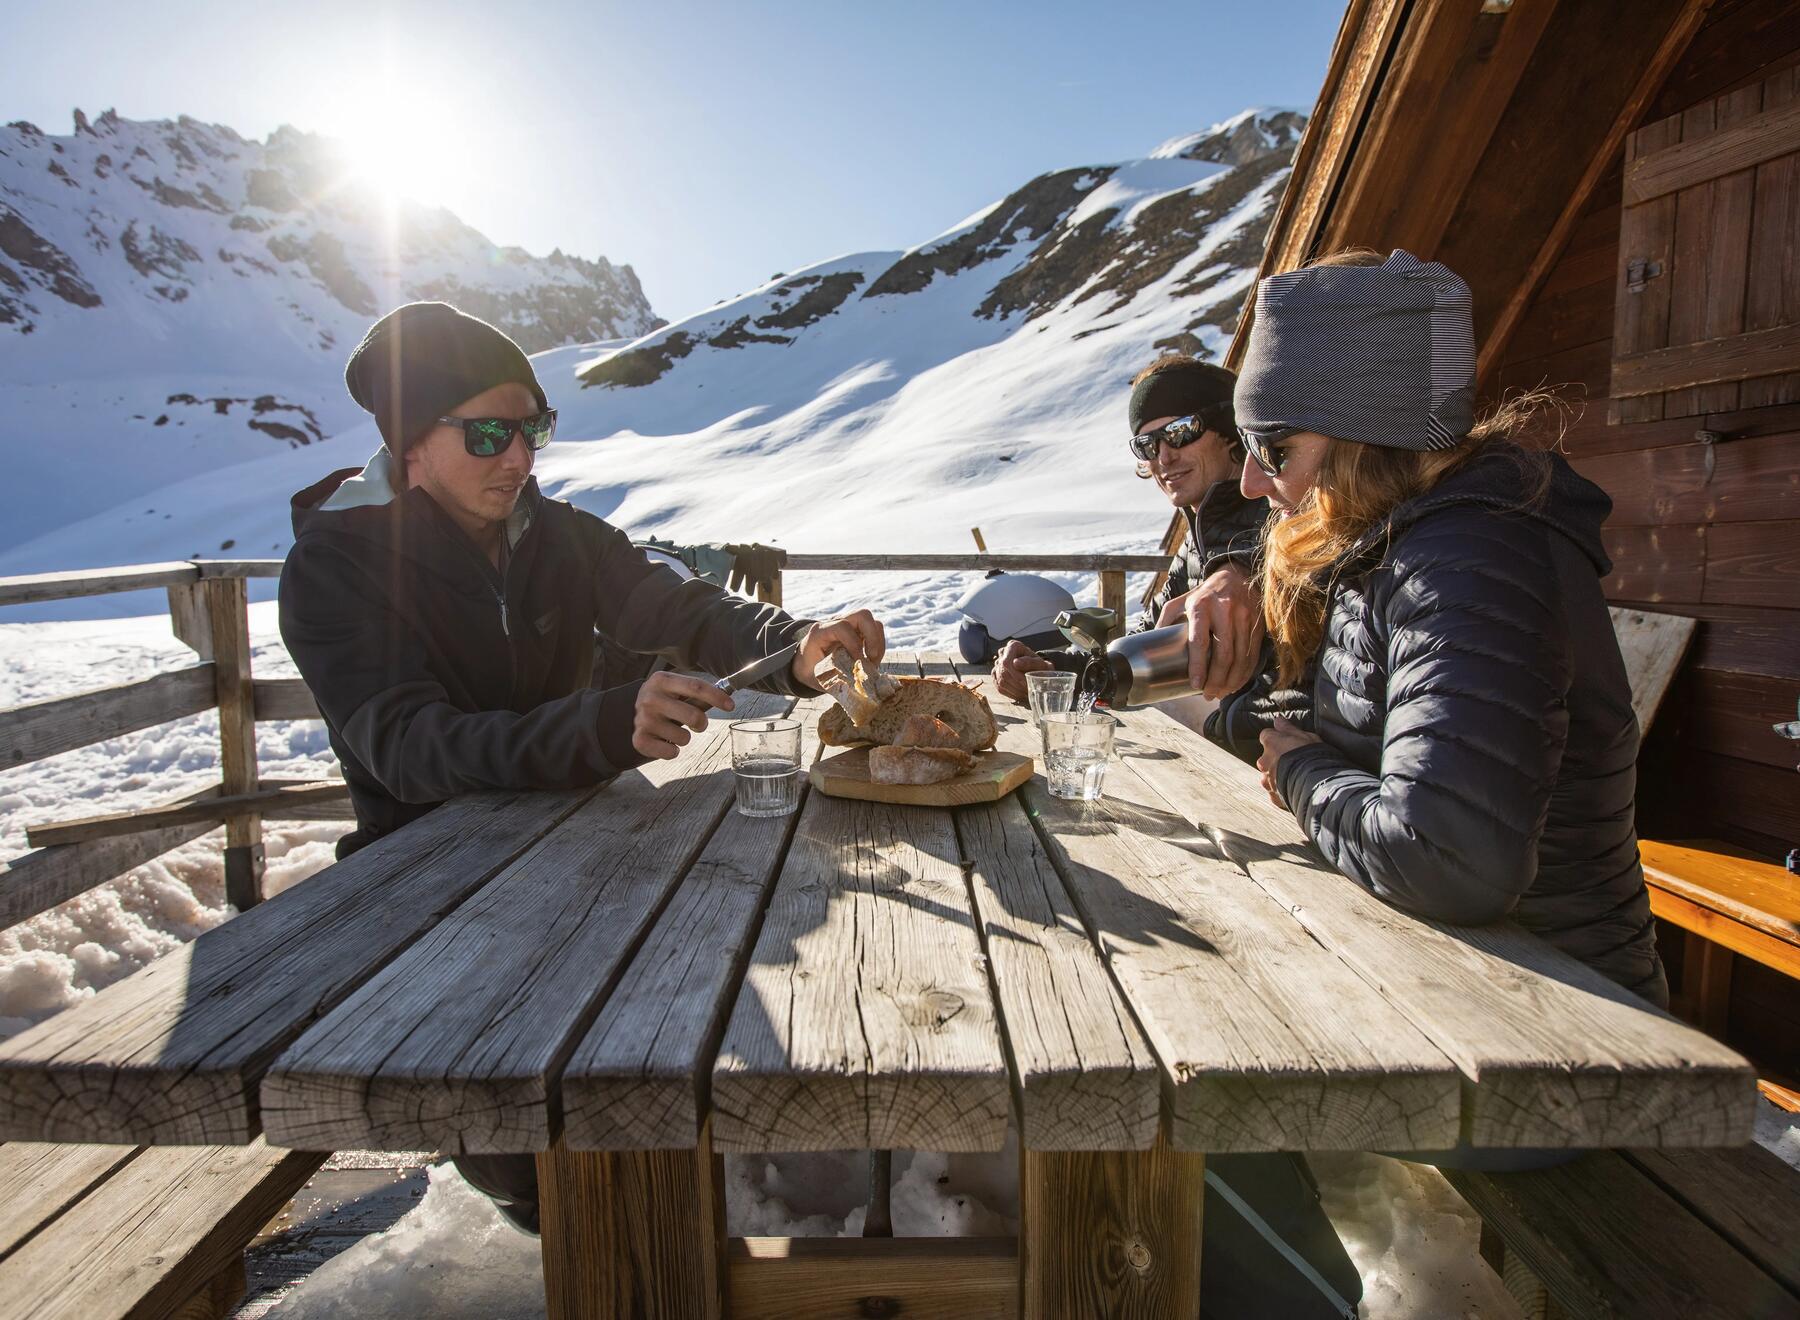 Narciarze spożywający posiłek podczas przerwy w jeździe na nartach